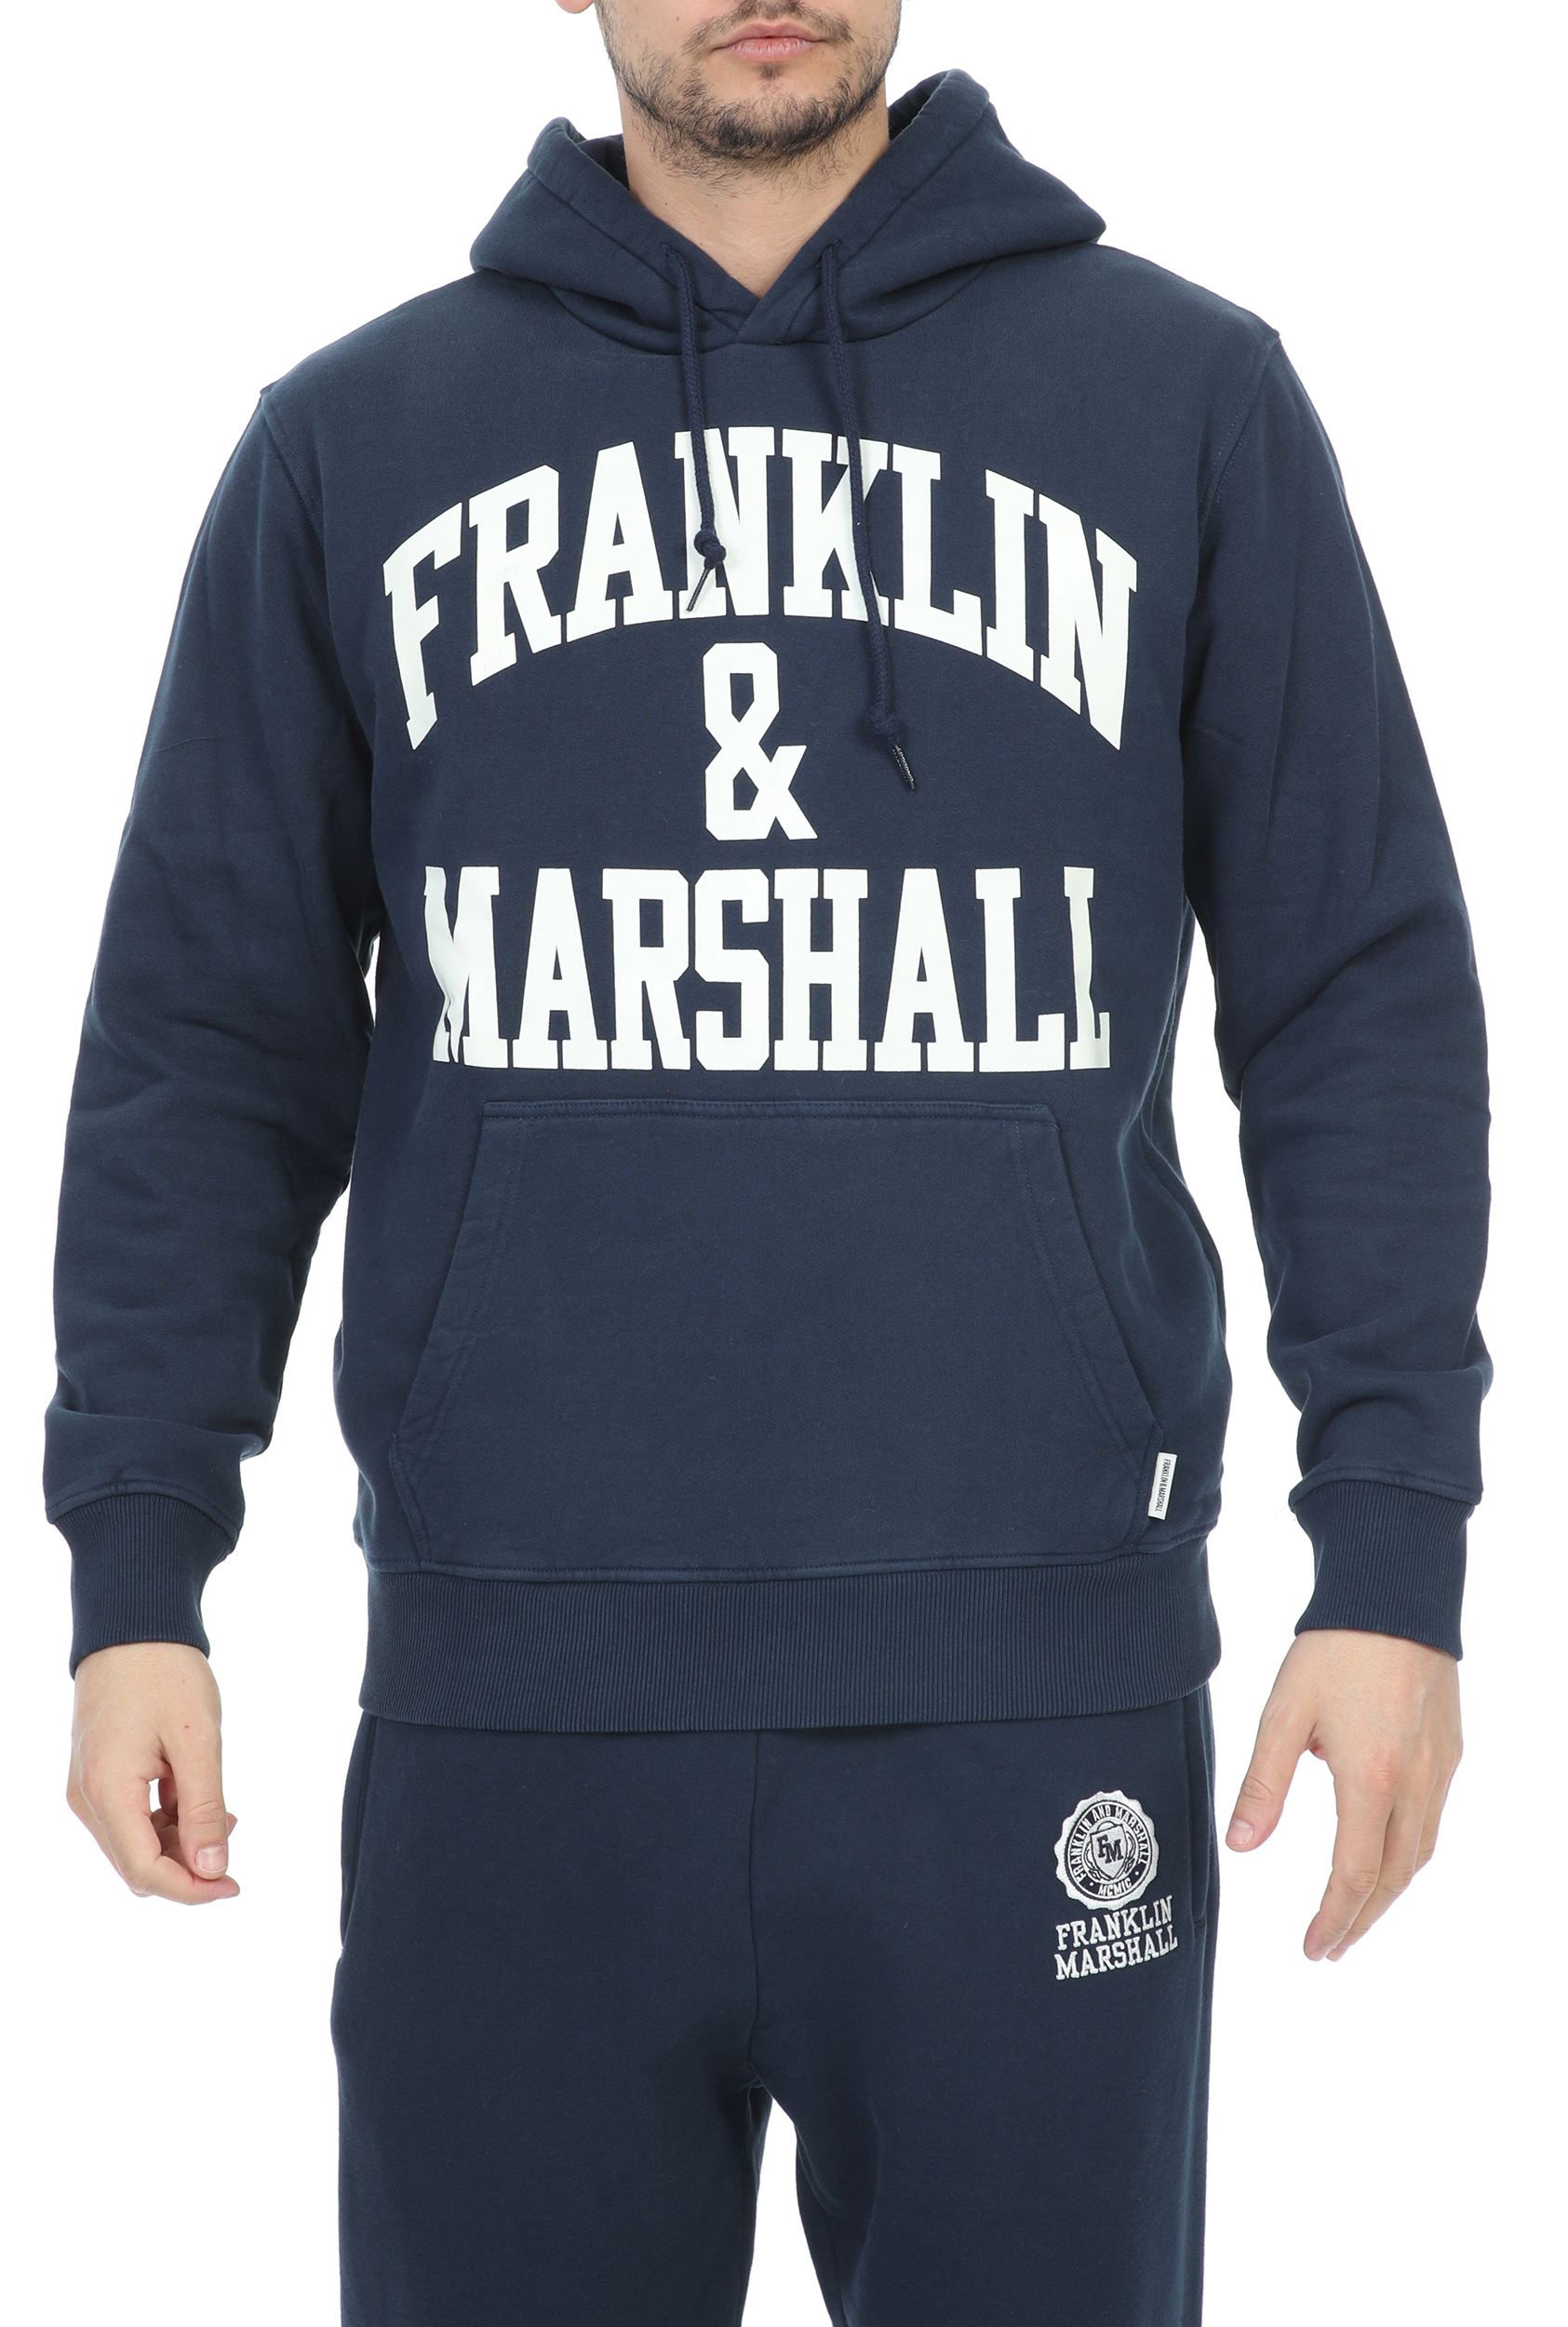 Ανδρικά/Ρούχα/Φούτερ/Μπλούζες FRANKLIN & MARSHALL - Ανδρική φούτερ μπλούζα FRANKLIN & MARSHALL BRUSHED COTTON FLEE μπλε